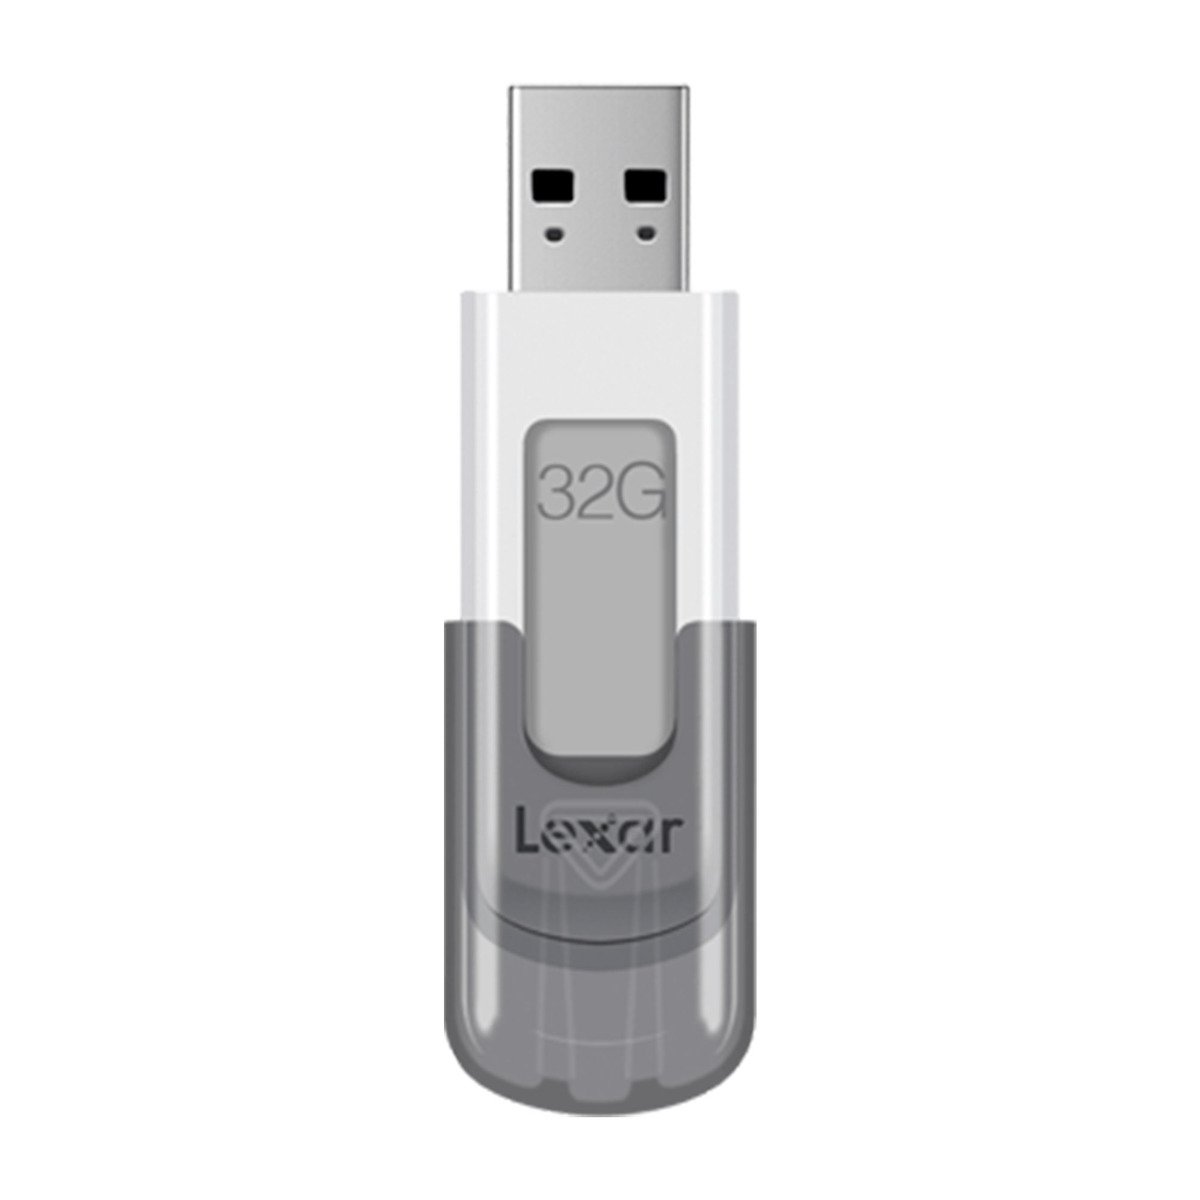 Lexar USB Flash Drives LJDV100 32GB